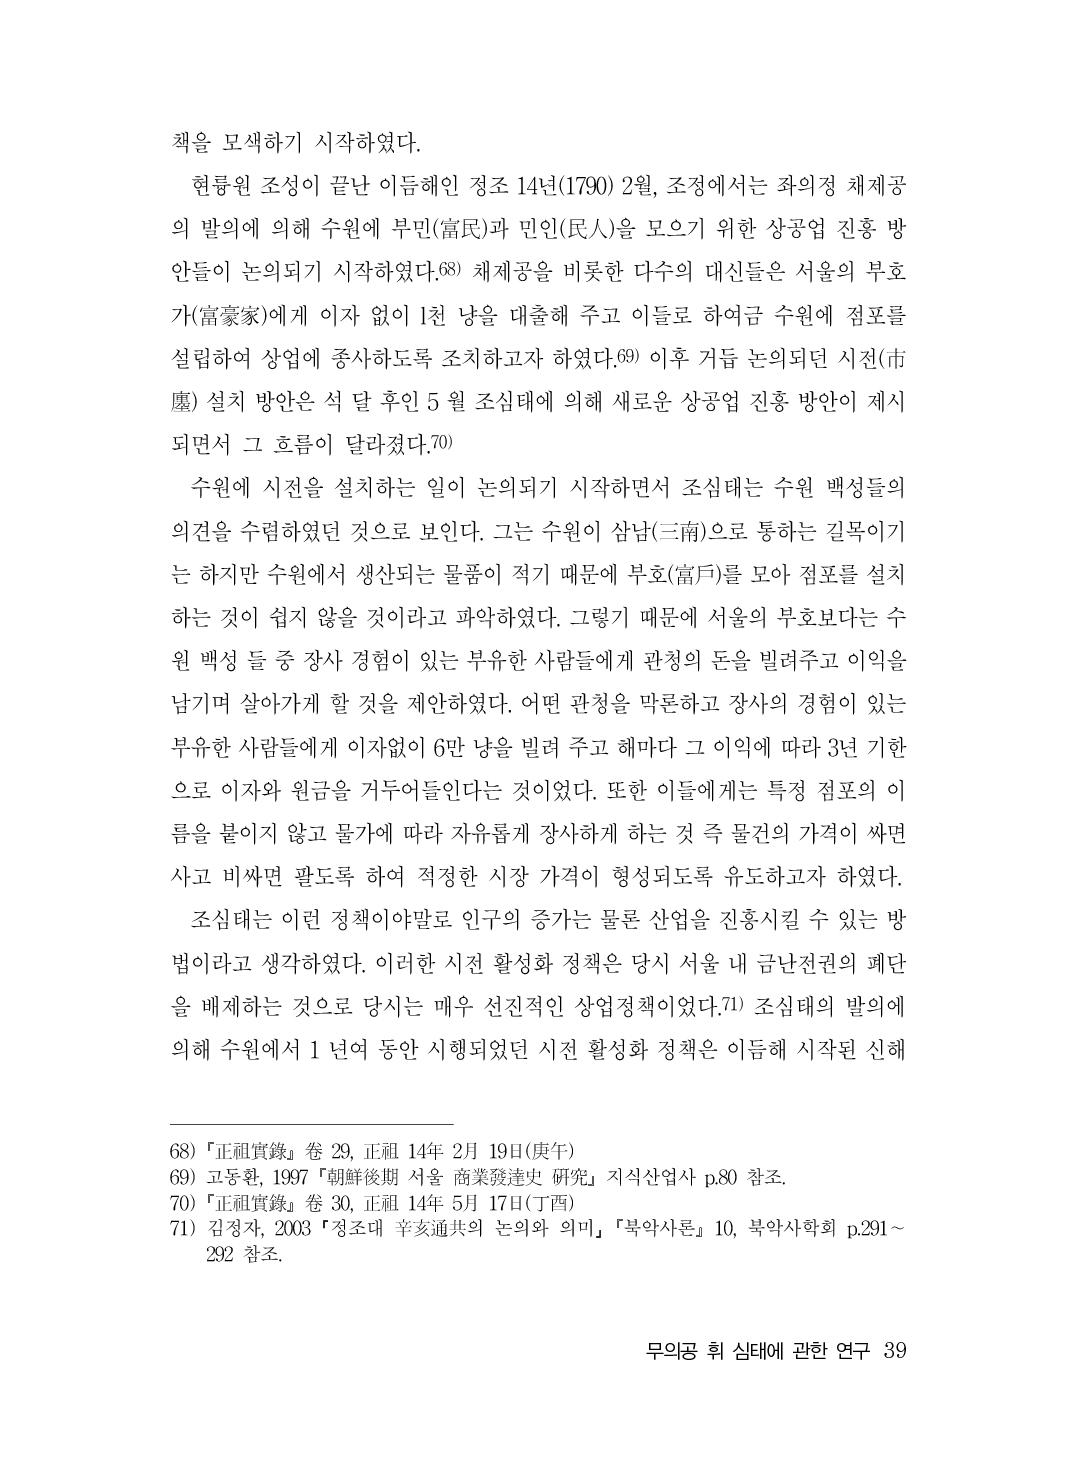 (전체) 송산종보(27호)(최종)_40.jpg